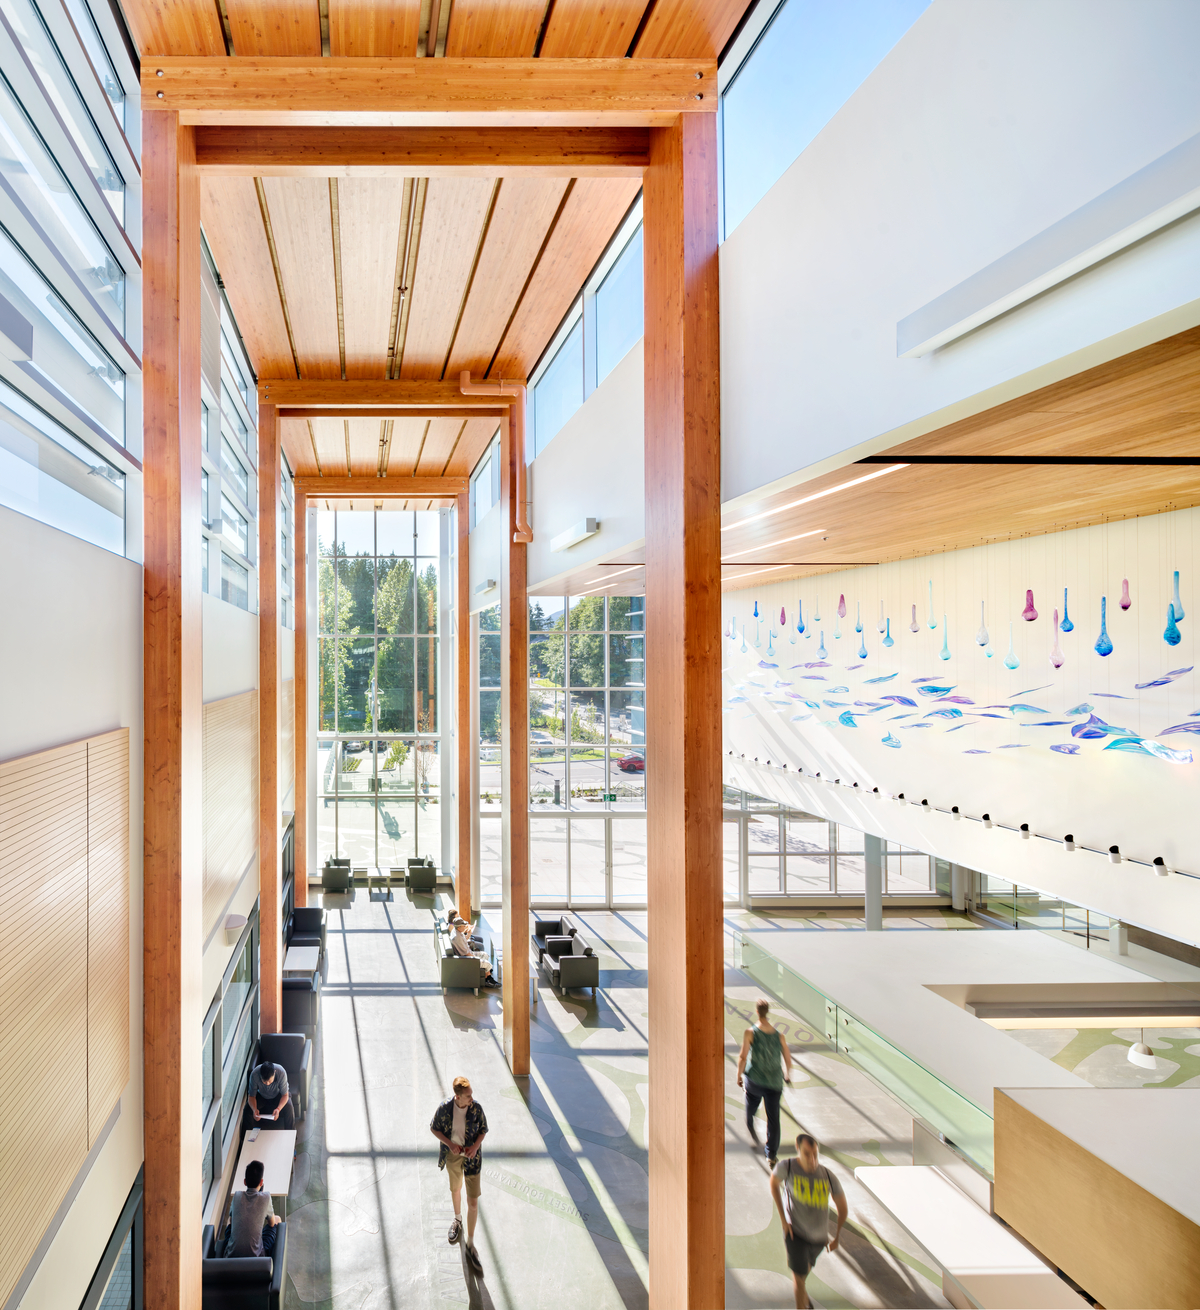 德尔布鲁克社区娱乐中心主大厅内的室内阳光白天视图，该中心具有全玻璃正面和全高胶合层压木材(胶合木)柱和梁支撑木质建筑“脊柱”